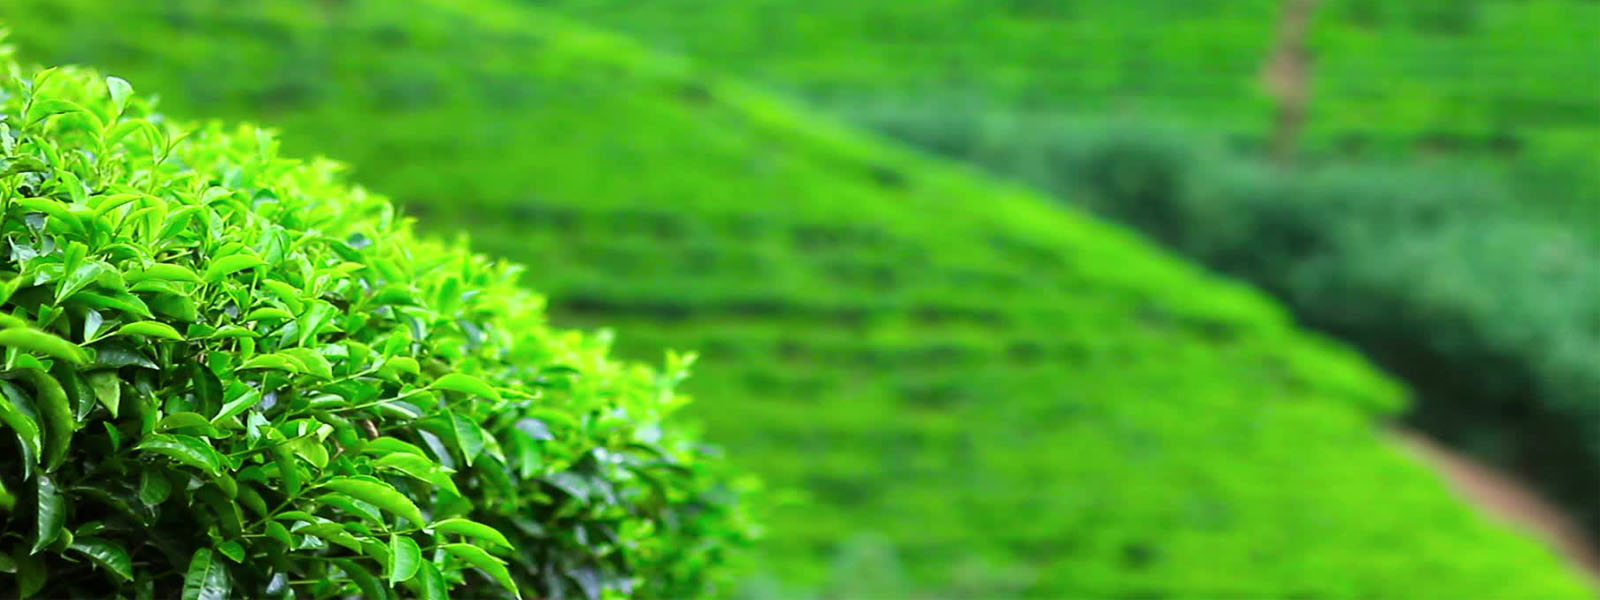 Sri Lankan tea export market under threat